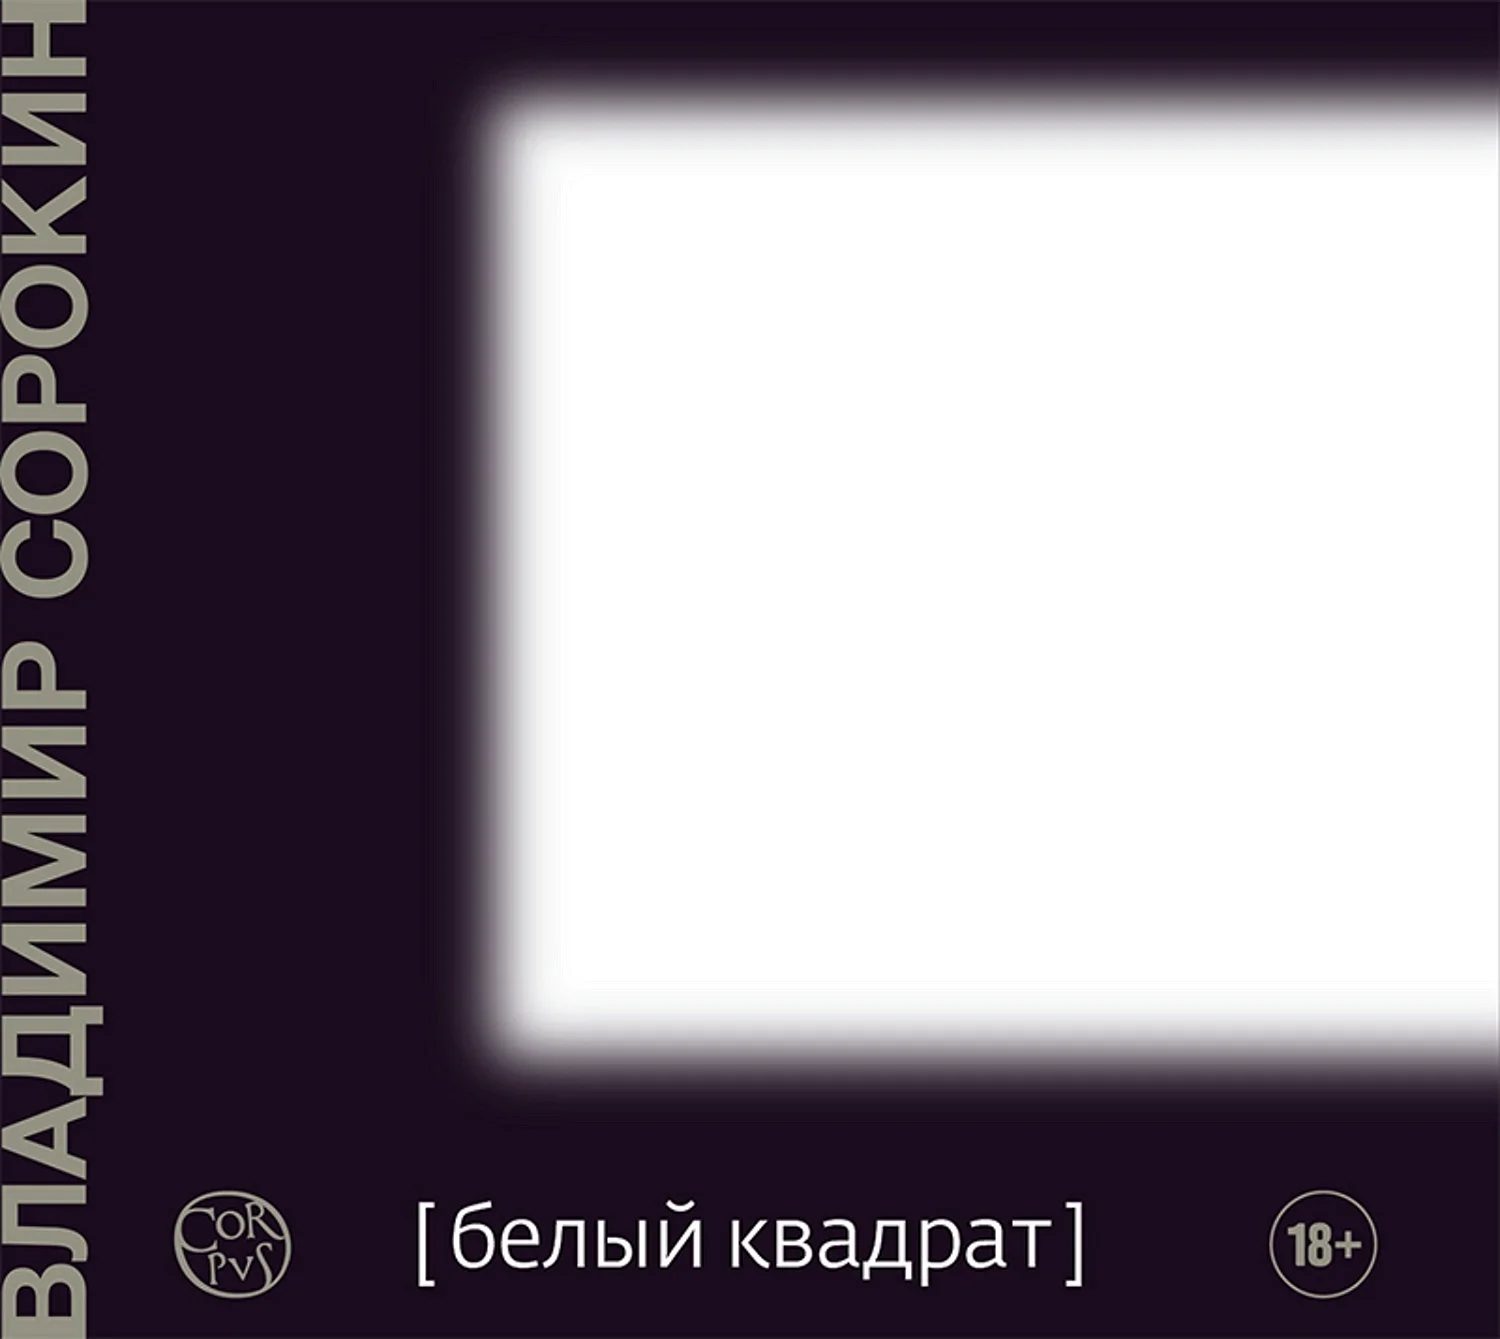 Сорокин Владимир - белый квадрат